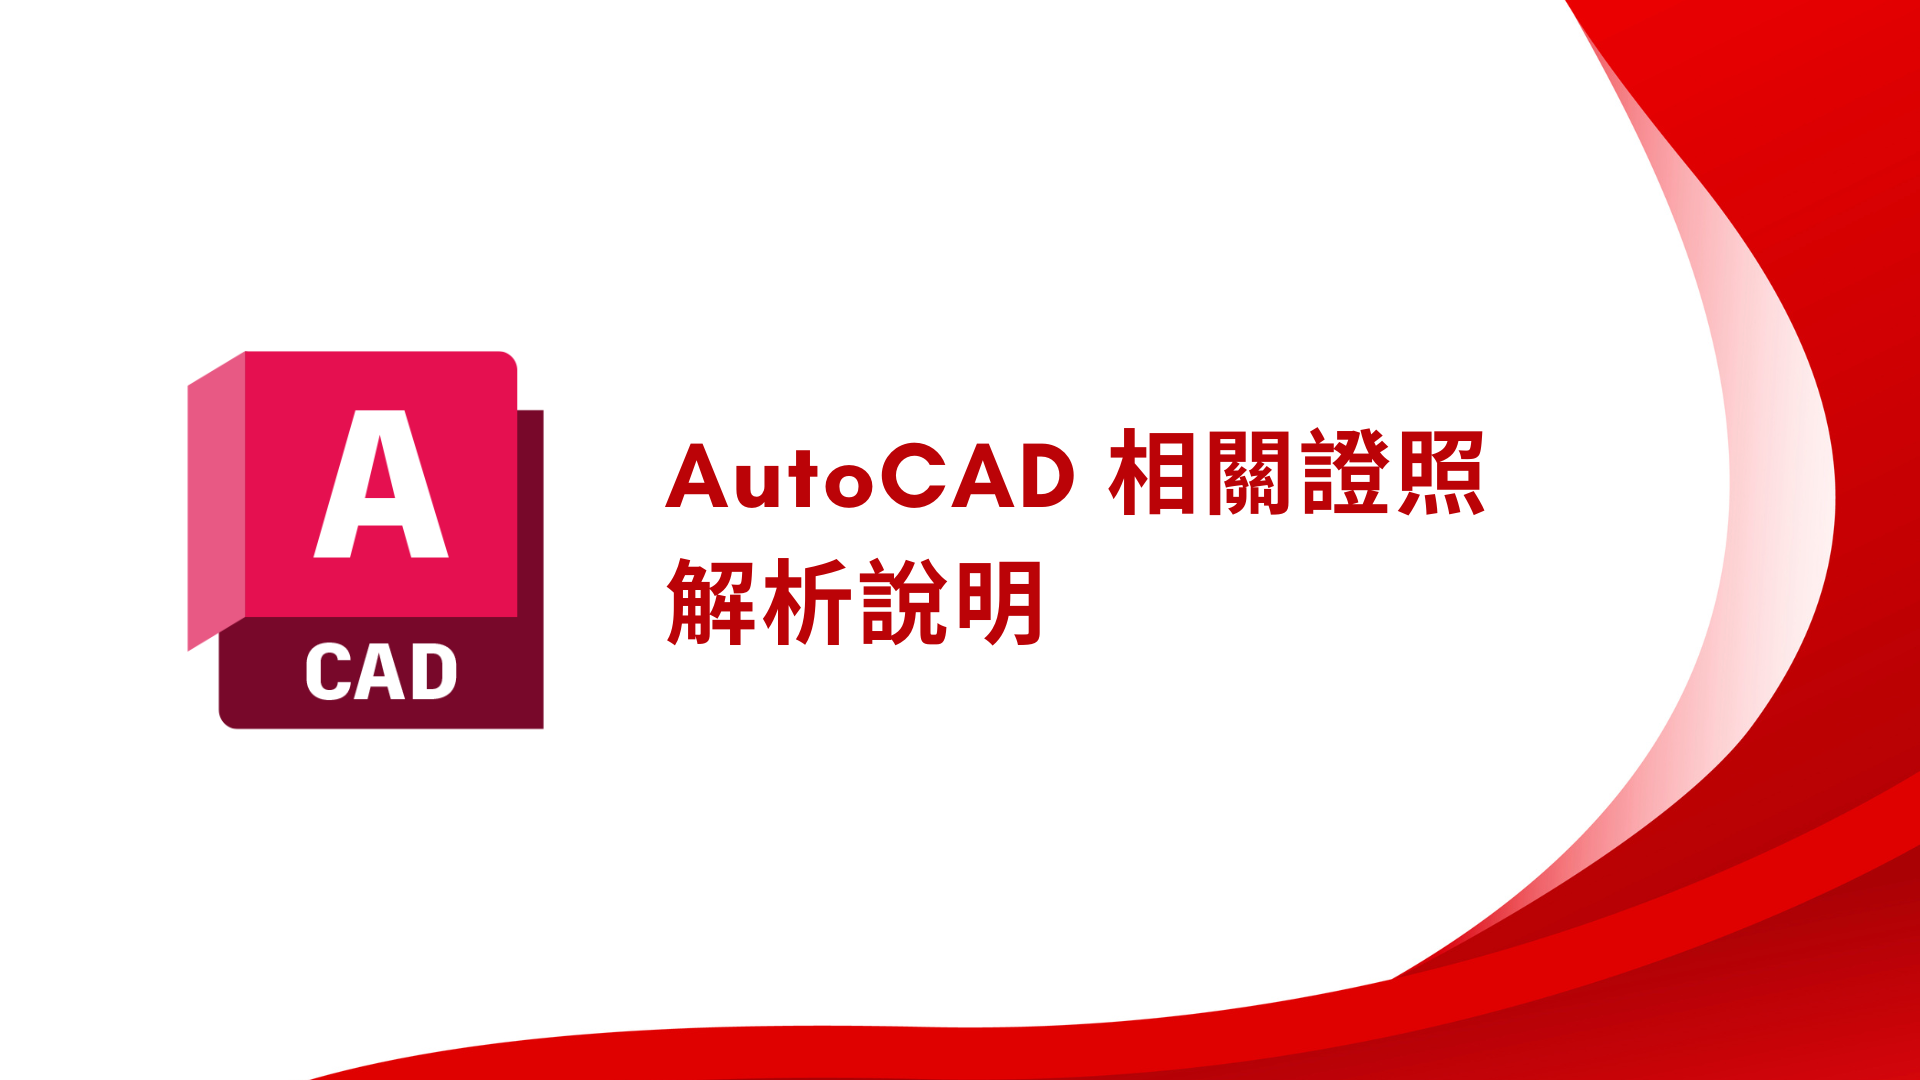 AutoCAD 相關證照解析說明